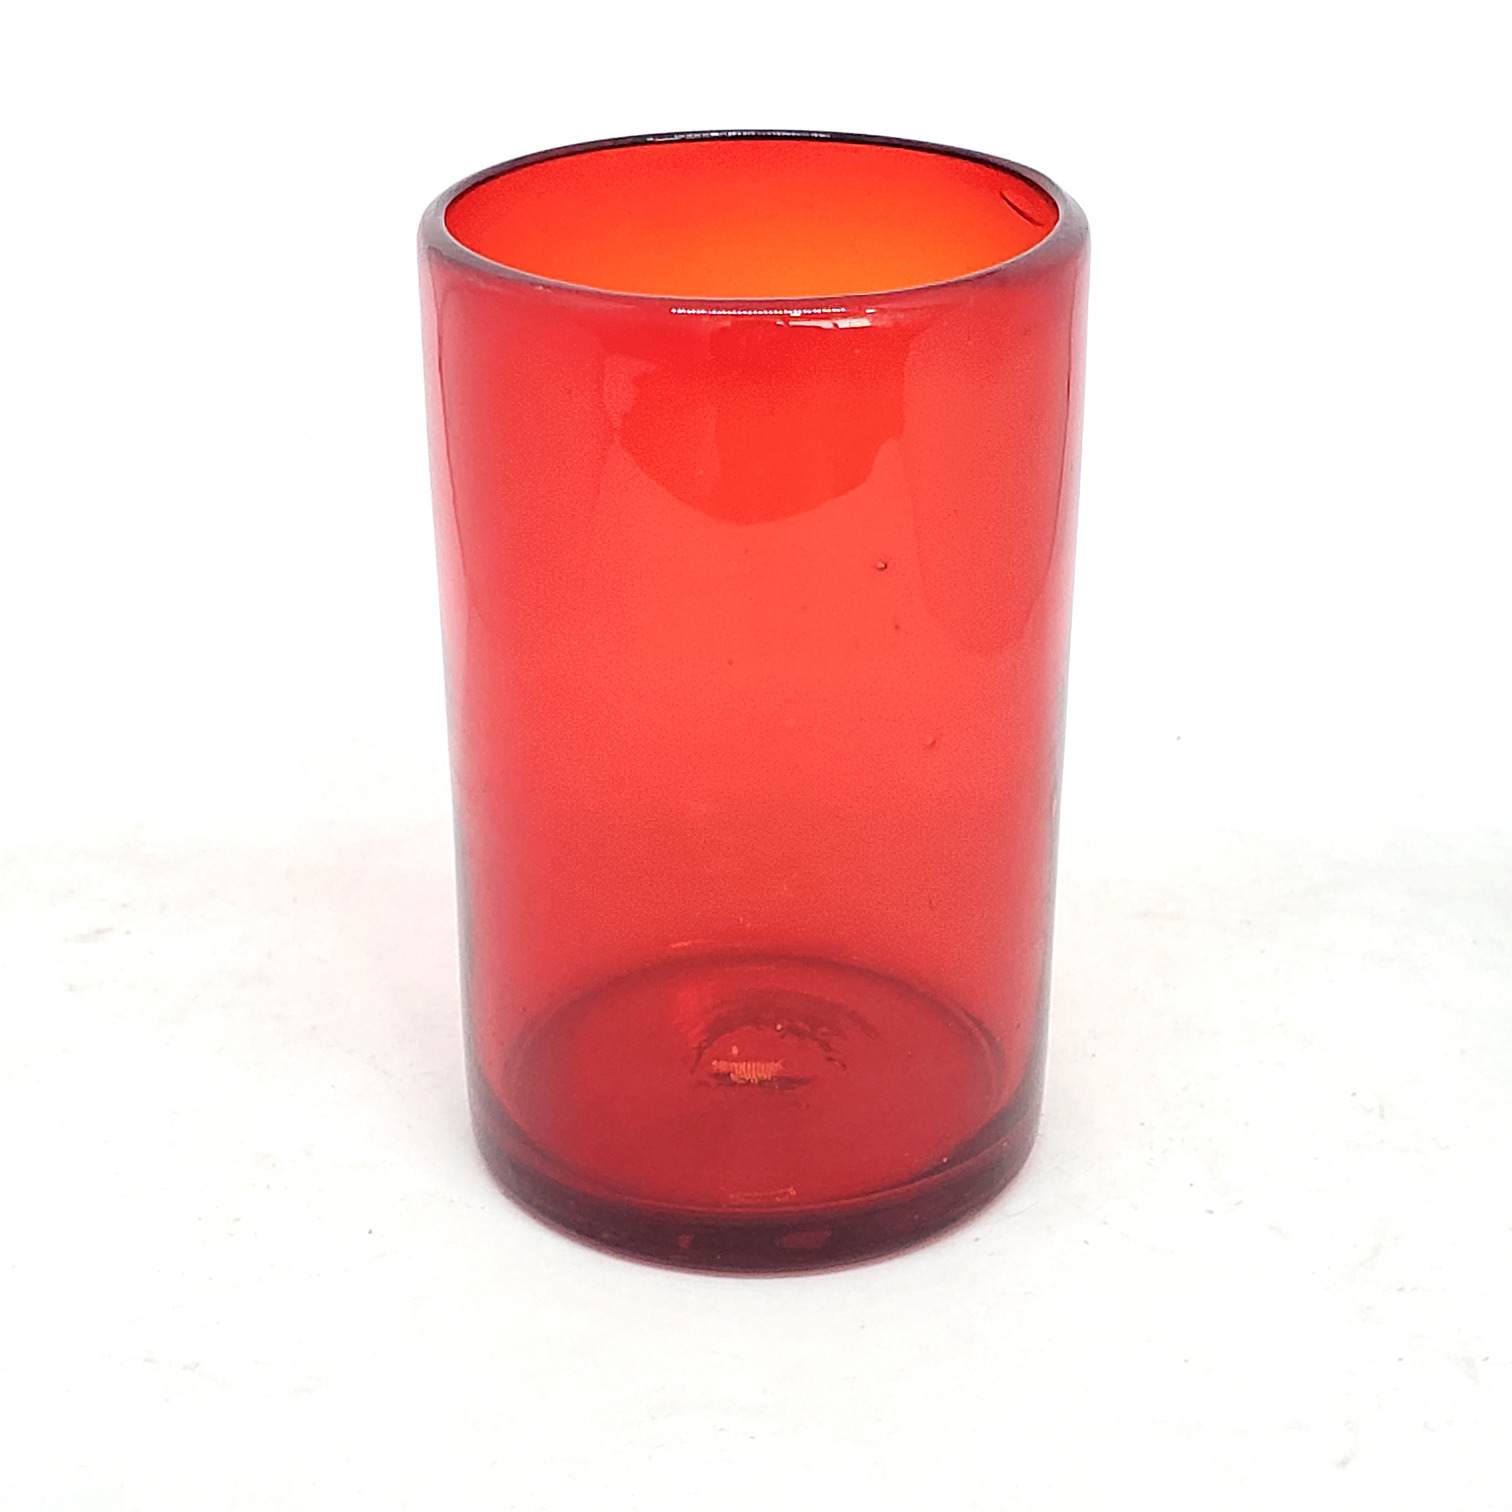 Vasos de Vidrio Soplado / Juego de 6 vasos grandes color rojo rubí / Éstos artesanales vasos le darán un toque clásico a su bebida favorita.